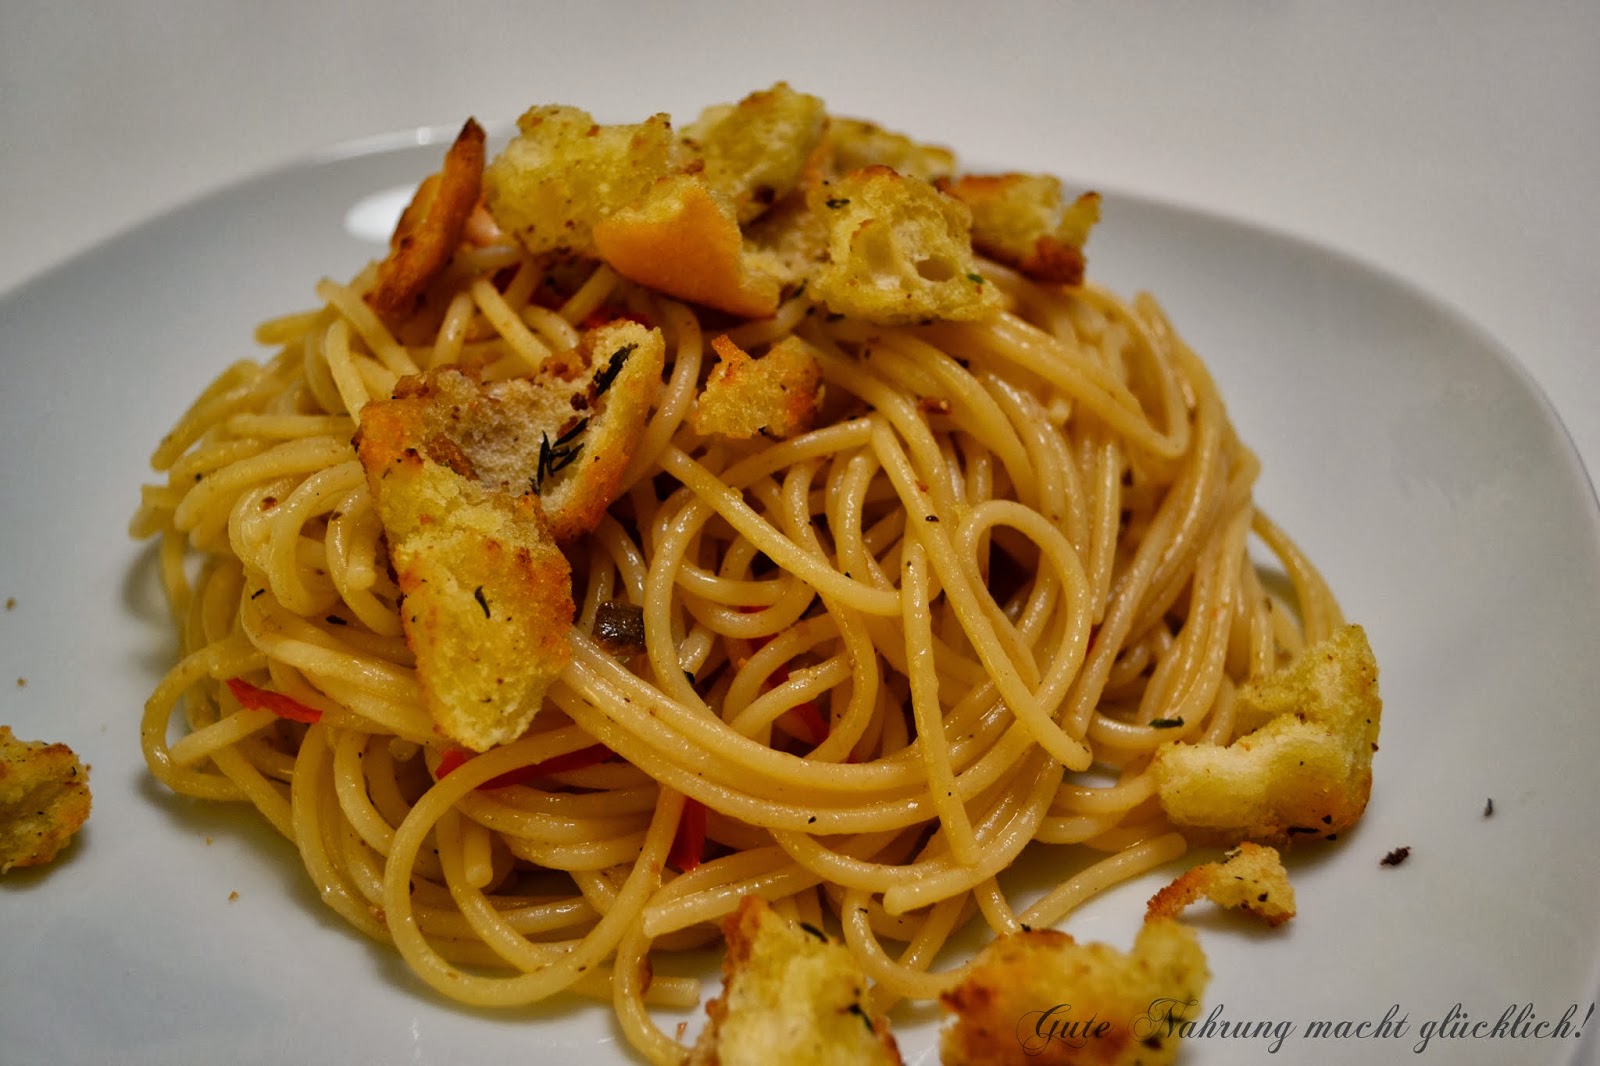 Gute Nahrung macht glücklich : Spaghetti mit Sardellen, Chili und kross ...